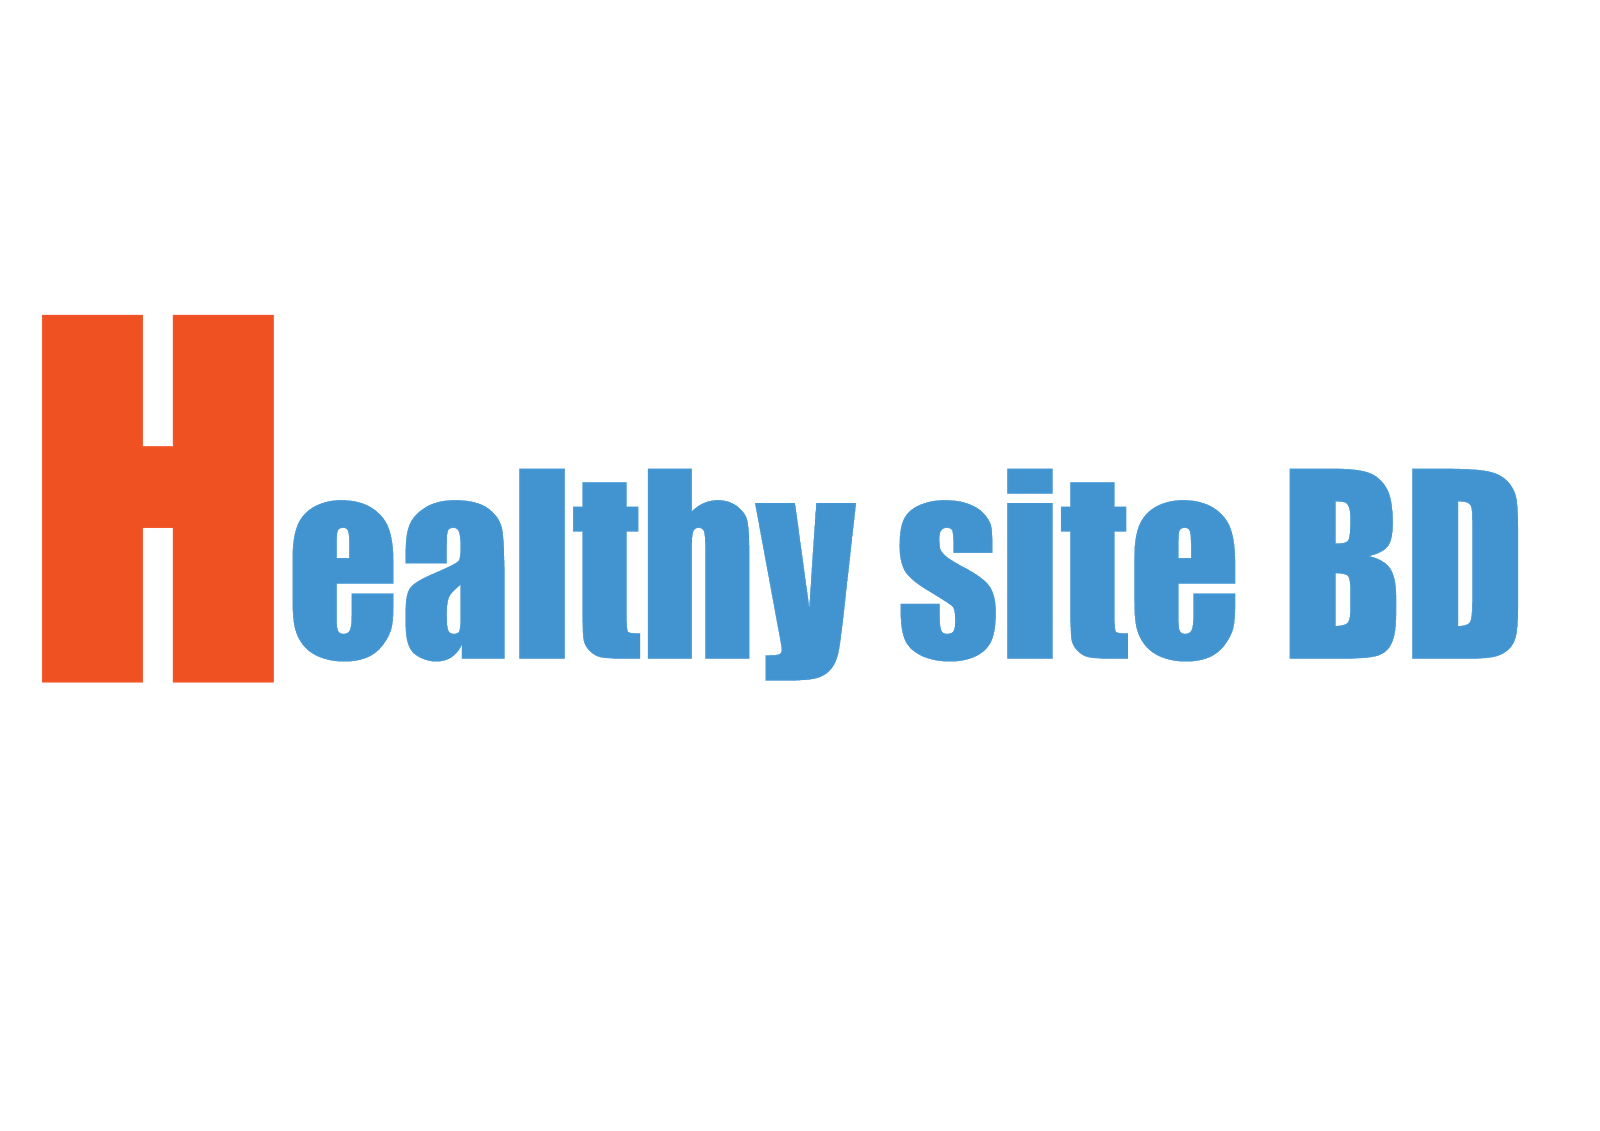  Healthy site BD  